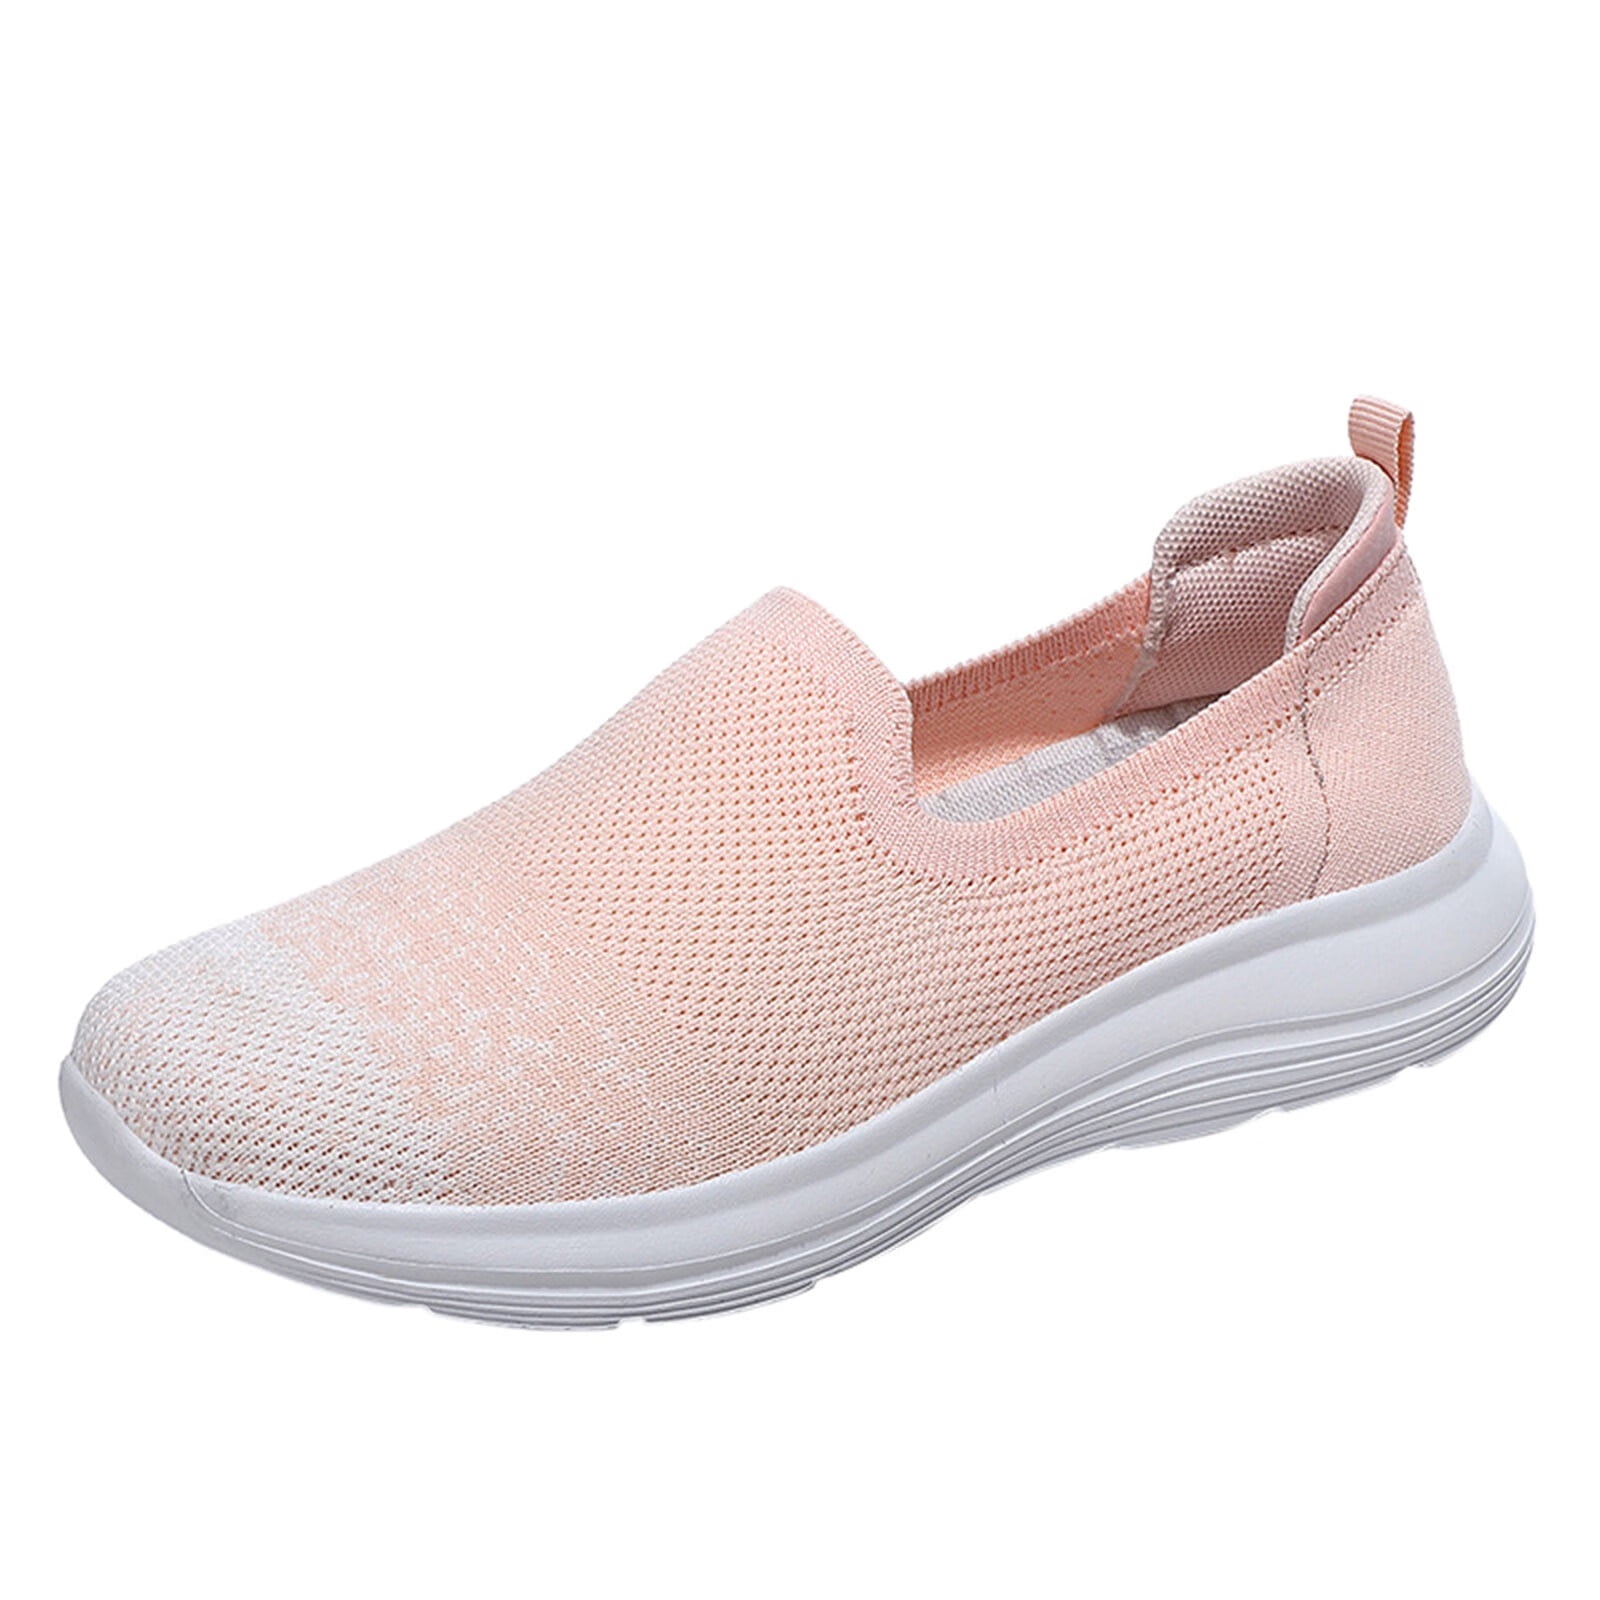 Ladies Leisure Platform Hidden Wedge Heels Slip on Sneakers Shoes | Wish |  Casual shoes women, Womens shoes wedges, High heel sneakers